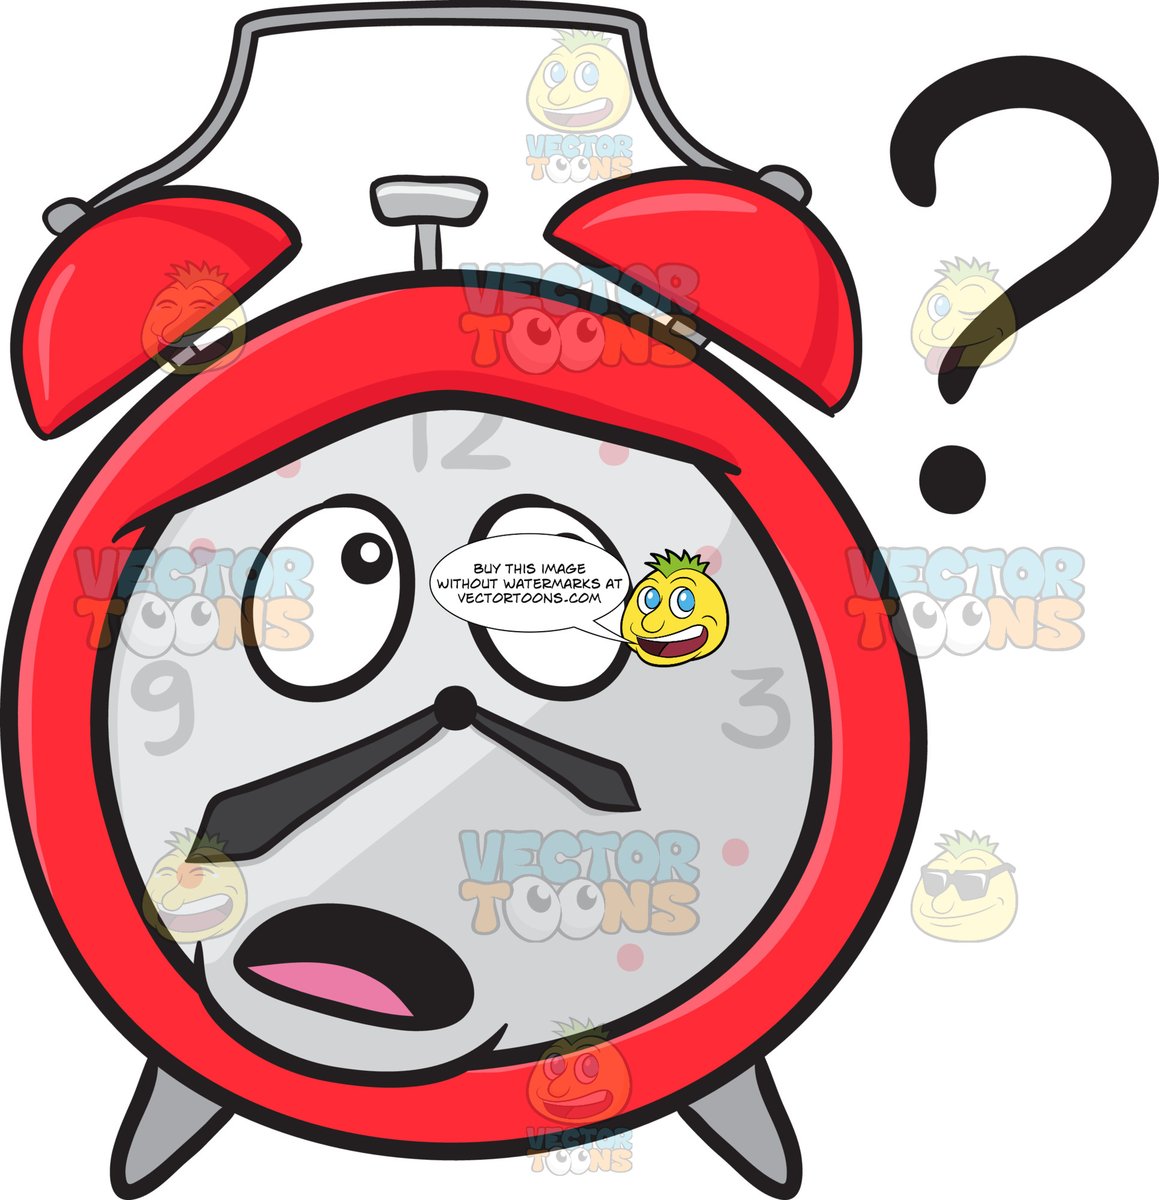 clipart clock question